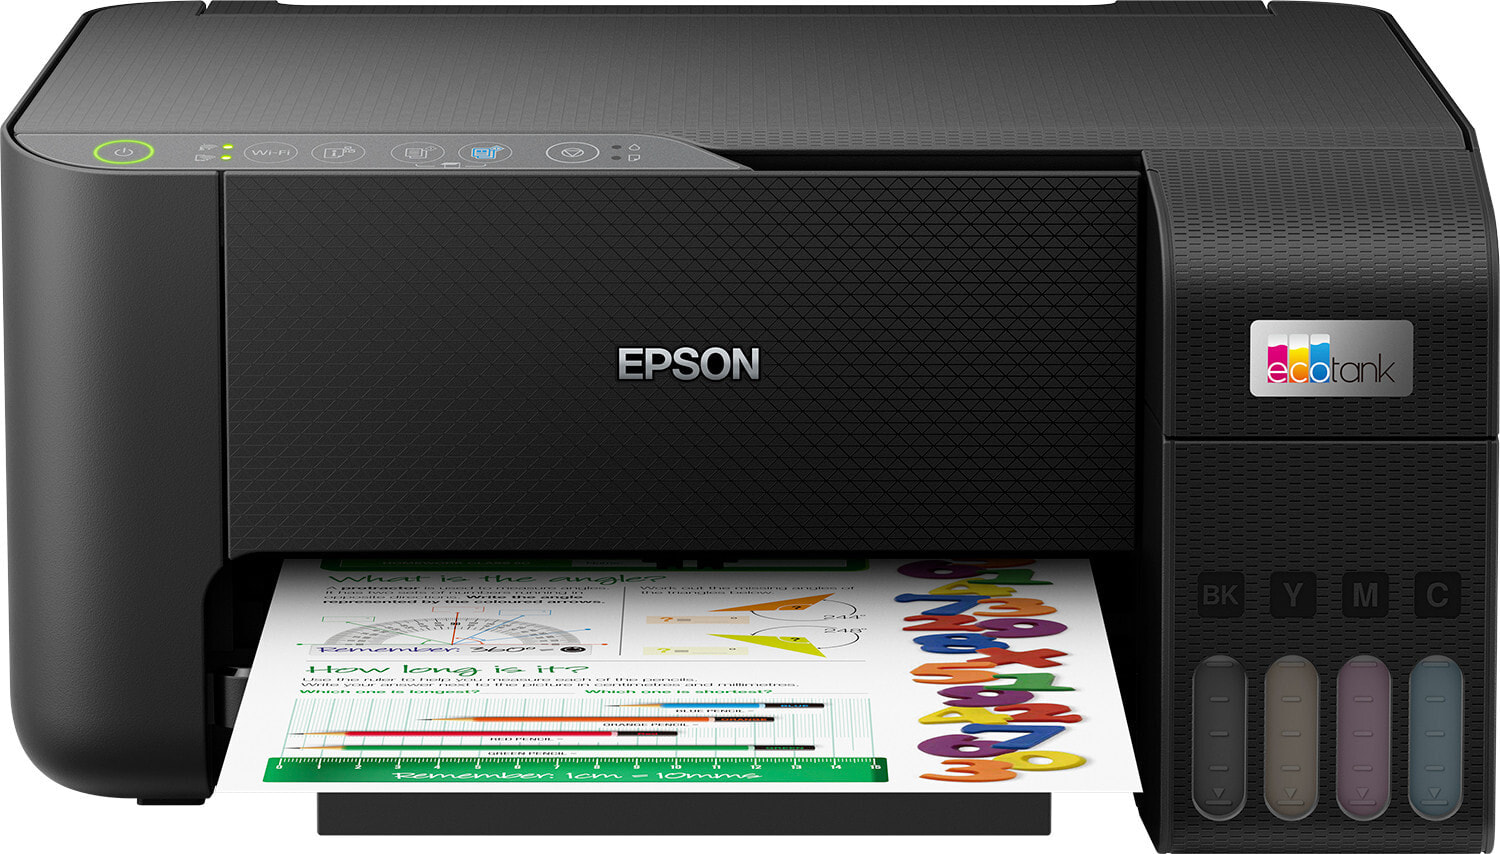 Epson EcoTank C11CJ67417 многофункциональное устройство (МФУ) Струйная A4 5760 x 1440 DPI 33 ppm Wi-Fi